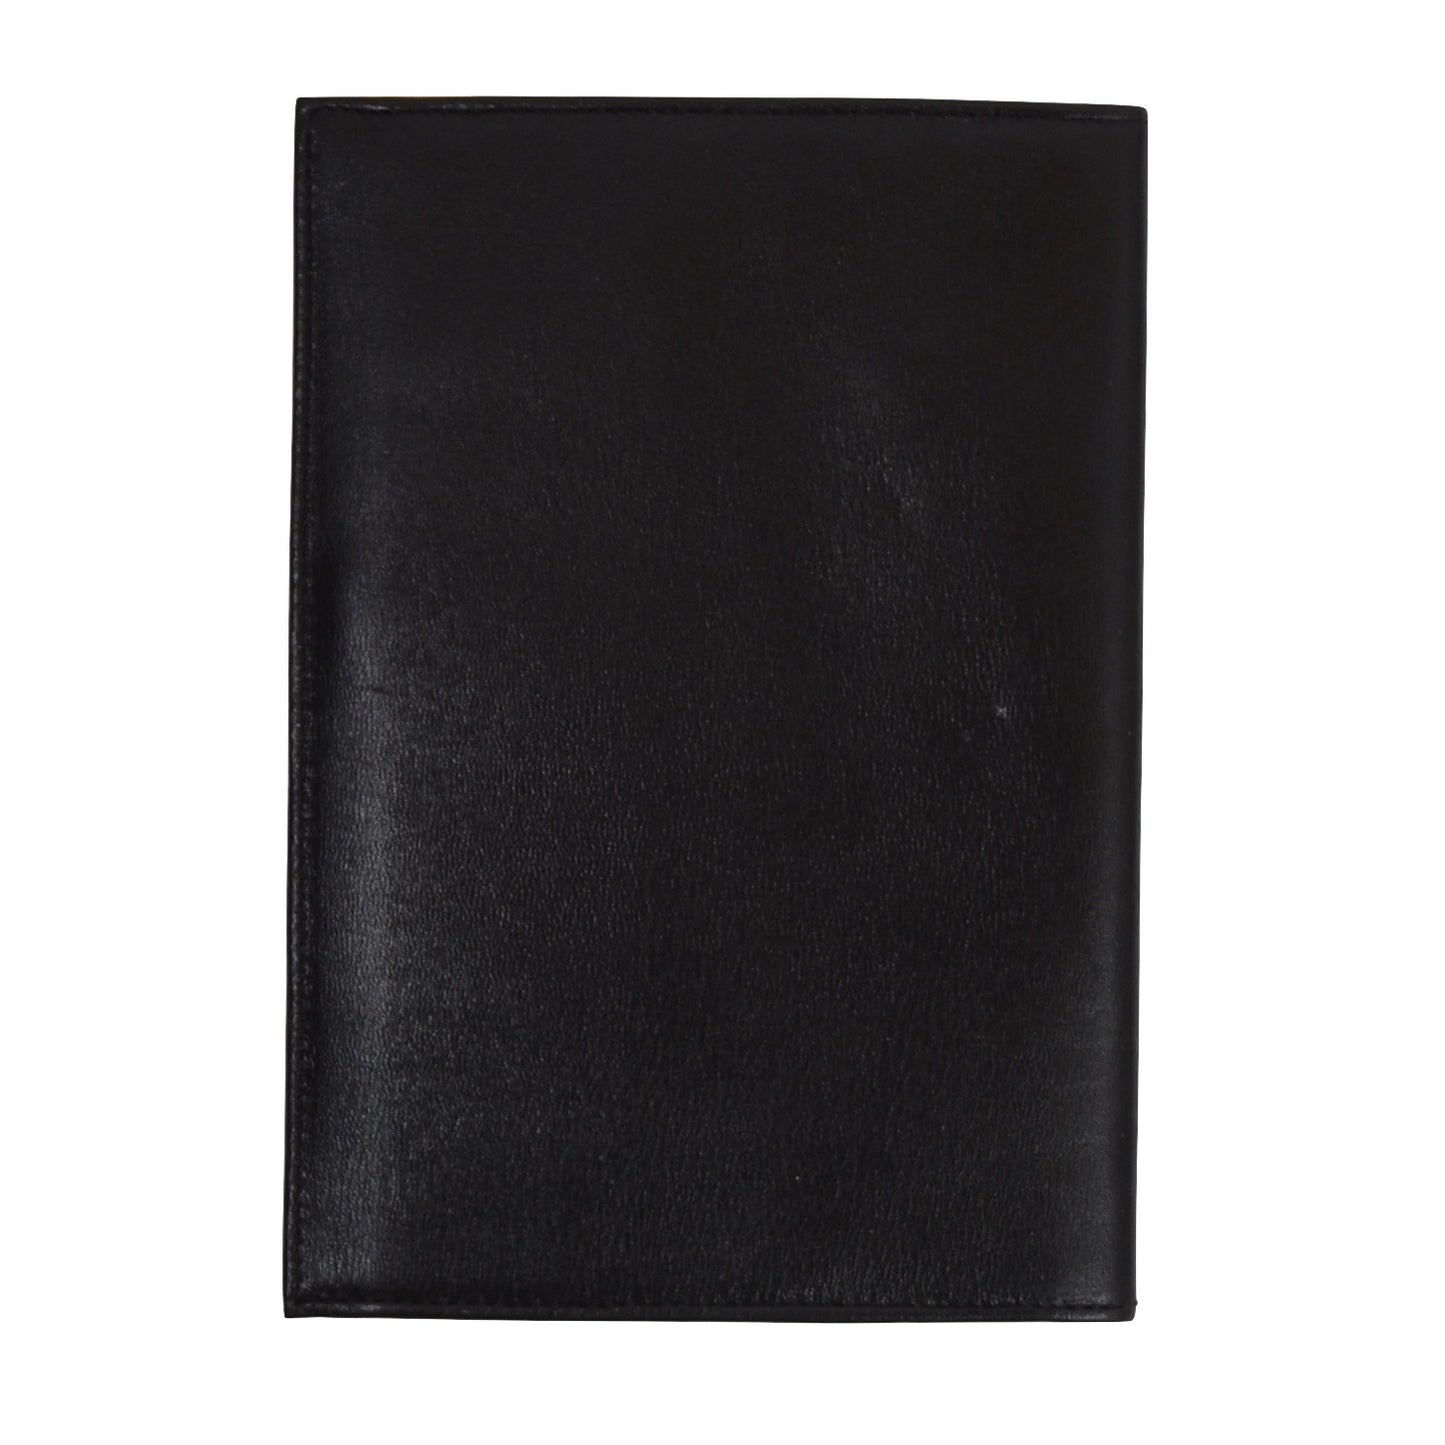 Goldpfeil Travel Wallet/Passport Case - Black